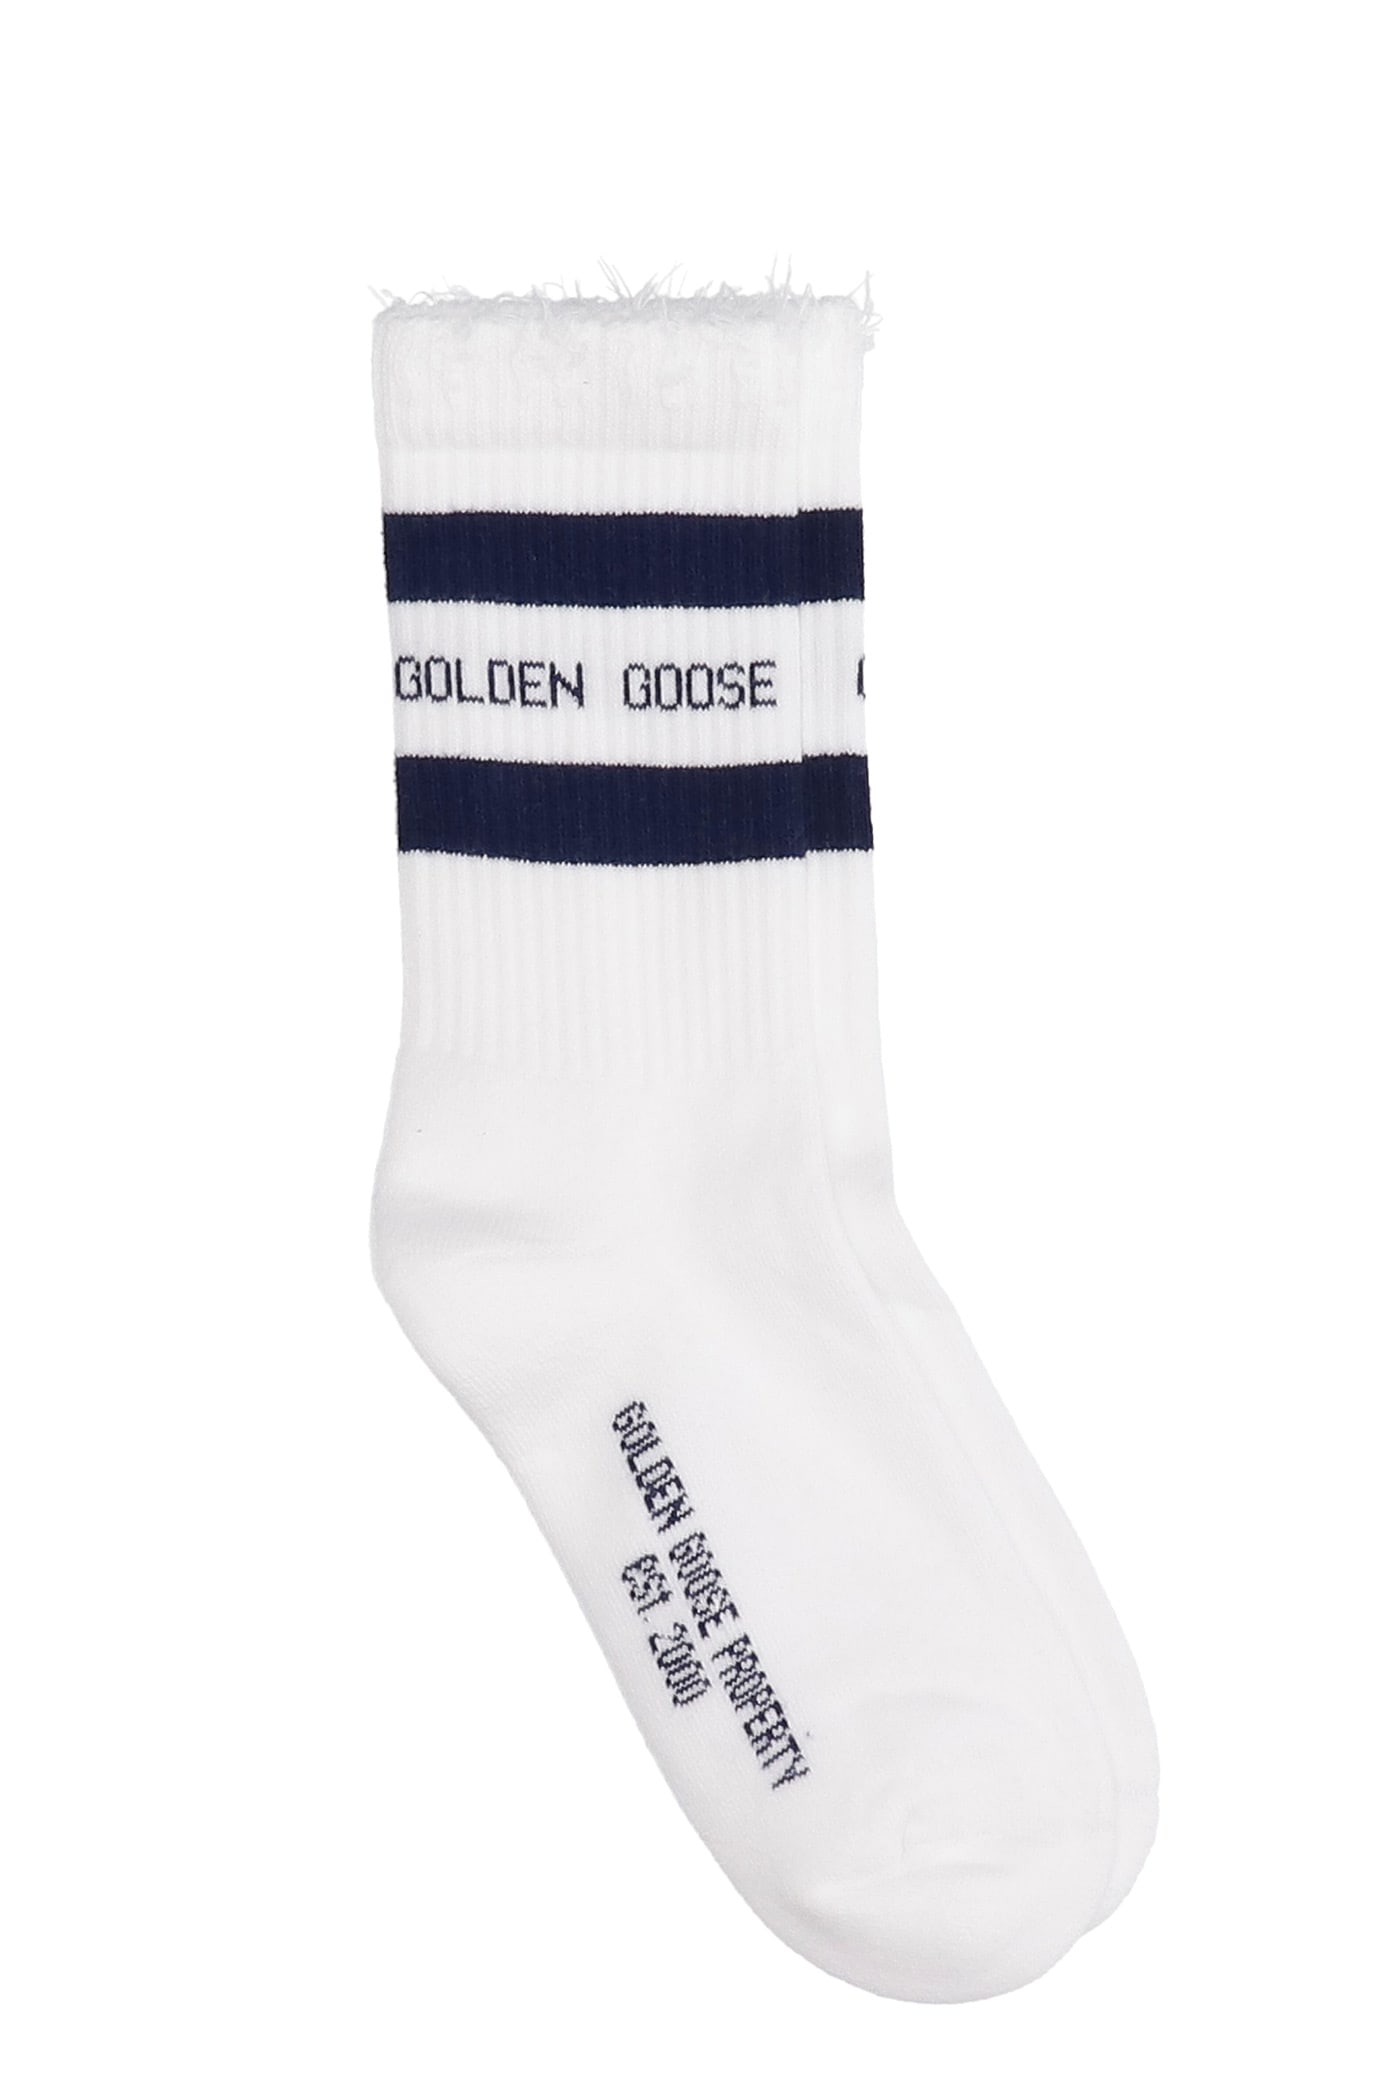 Golden Goose Socks In White Cotton